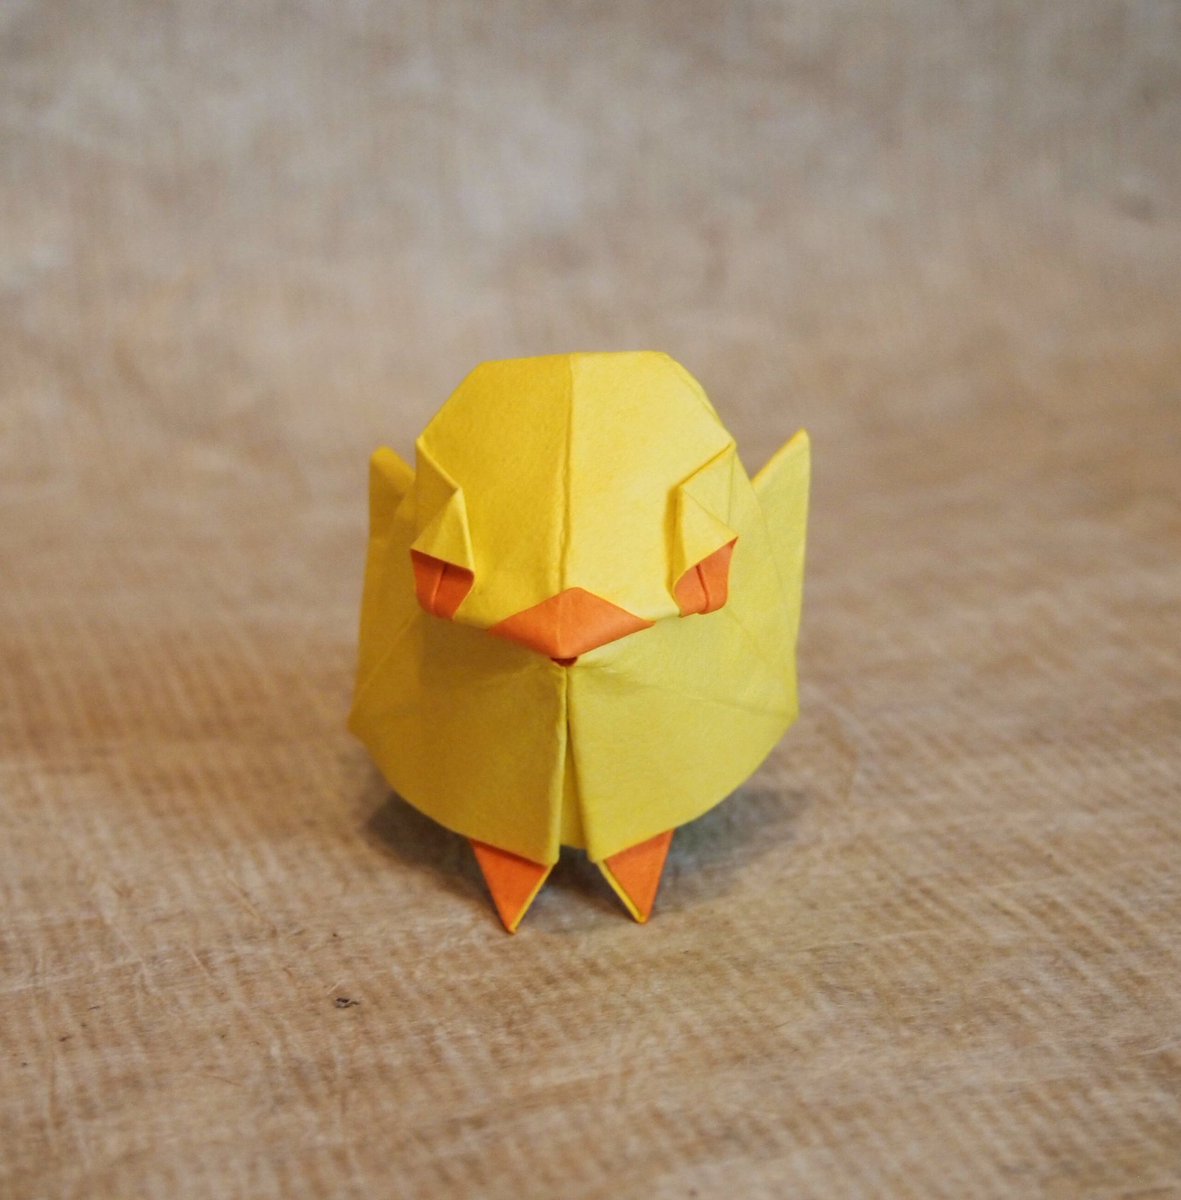 Twitter 上的 一匹柴犬 折り紙作品 ひよこ 創作 折り 一匹柴犬 数年前に折ったヒヨコ が無理矢理仕上げであまり納得できてなかったので再トライ シンプルにかわいいデザインにできました 魚の基本的より Origami Chick 折り紙作品 折り紙 ひよこ T